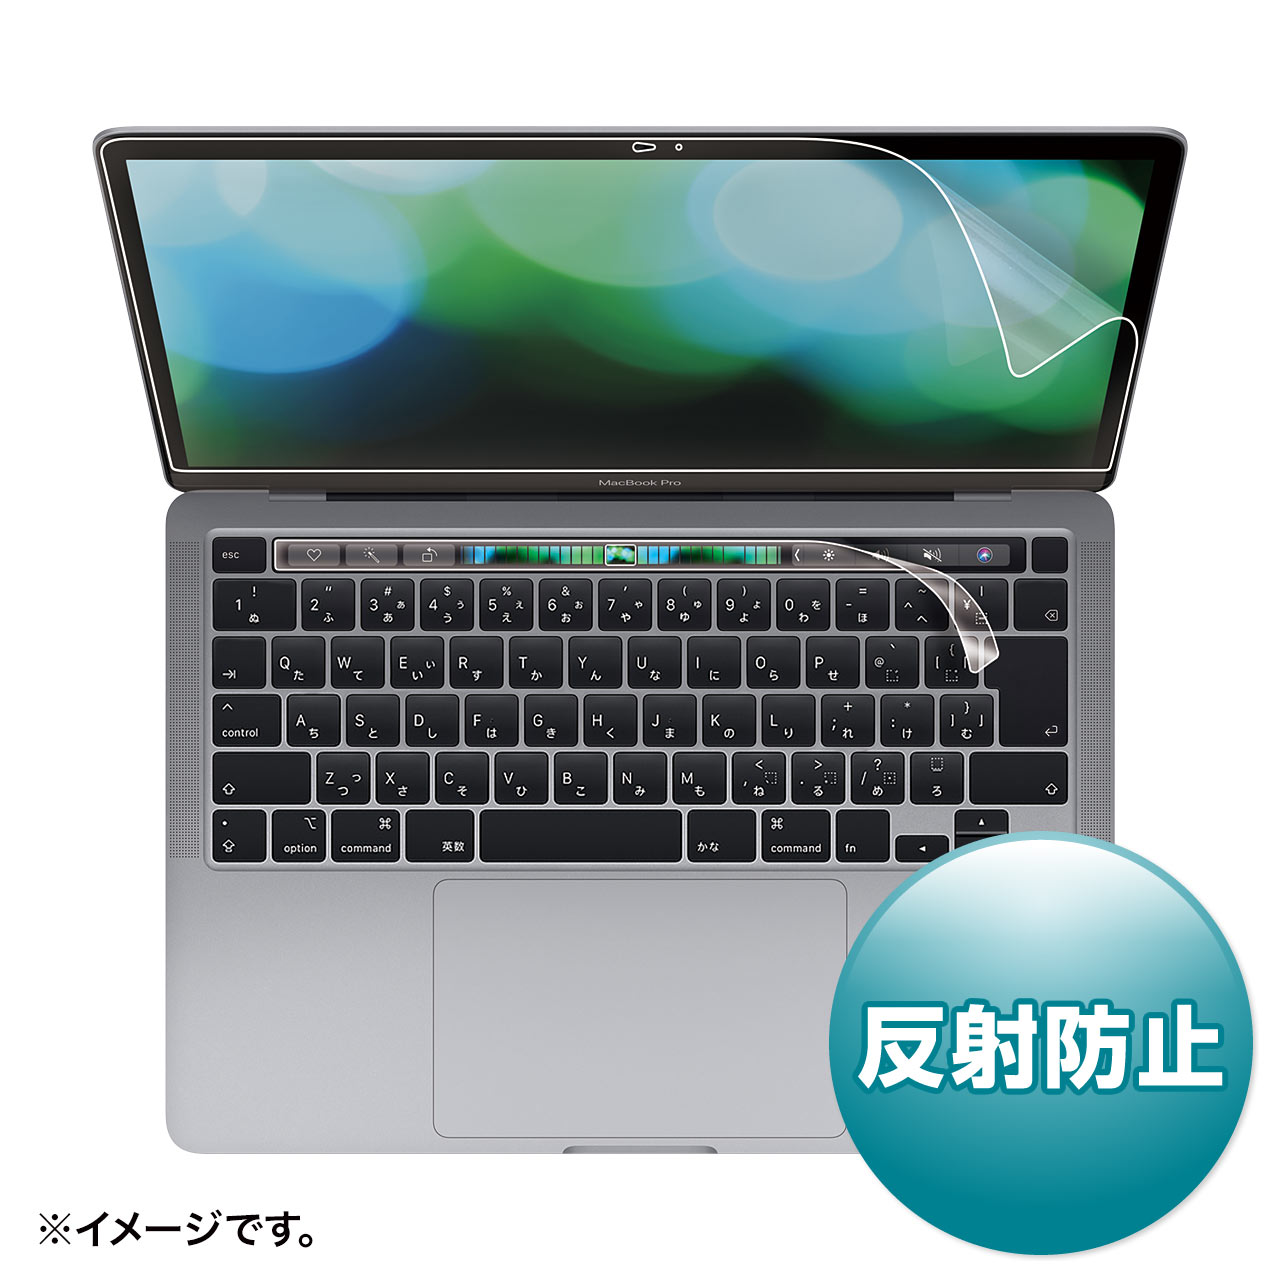 サンワサプライより、13インチMacBook Pro Touch Bar搭載モデル専用の液晶保護フィルム2製品が発売